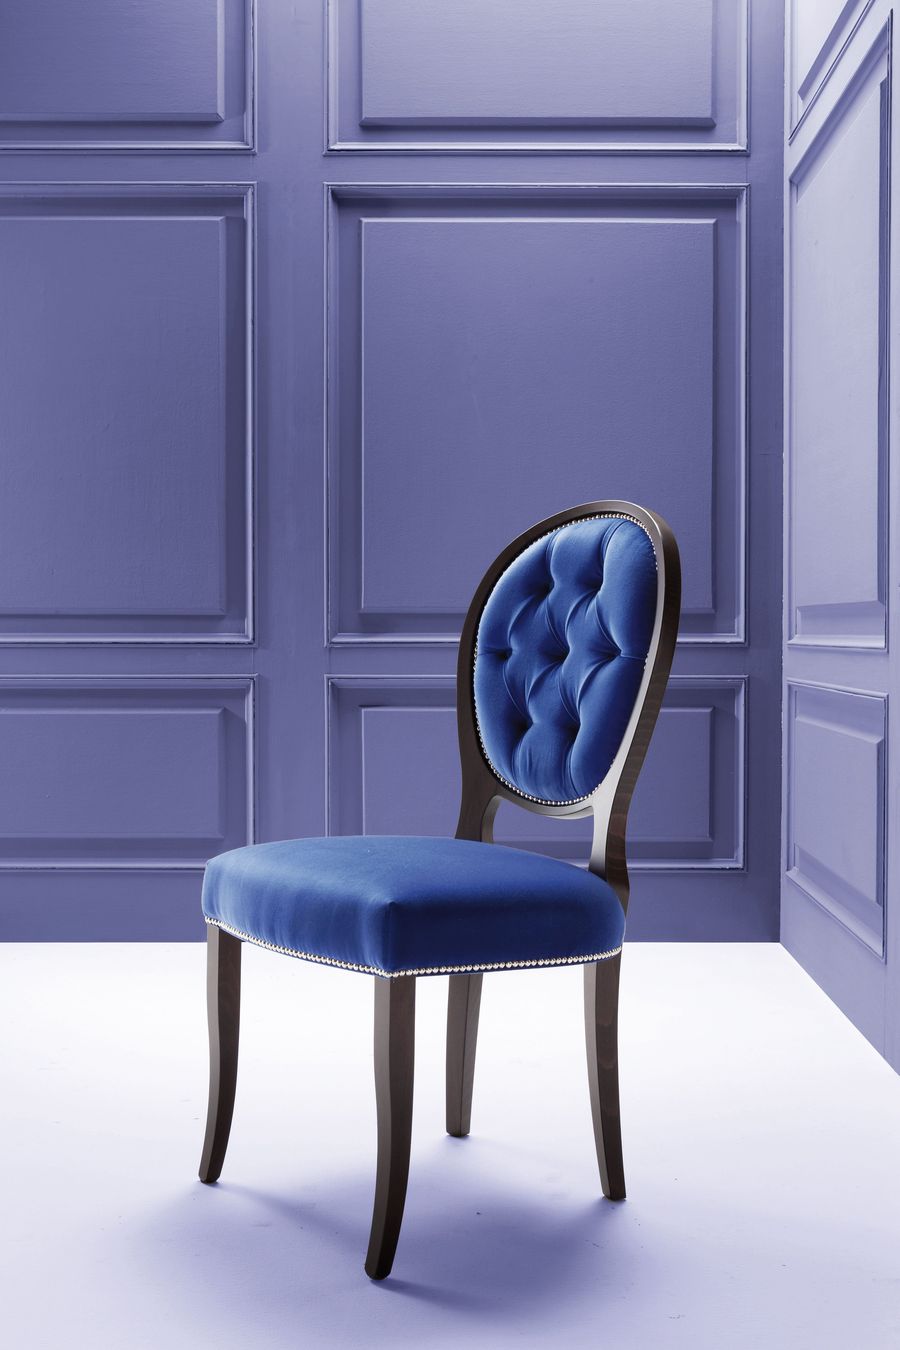  Элегантный стул Costantini Pietro Tulip 9189S